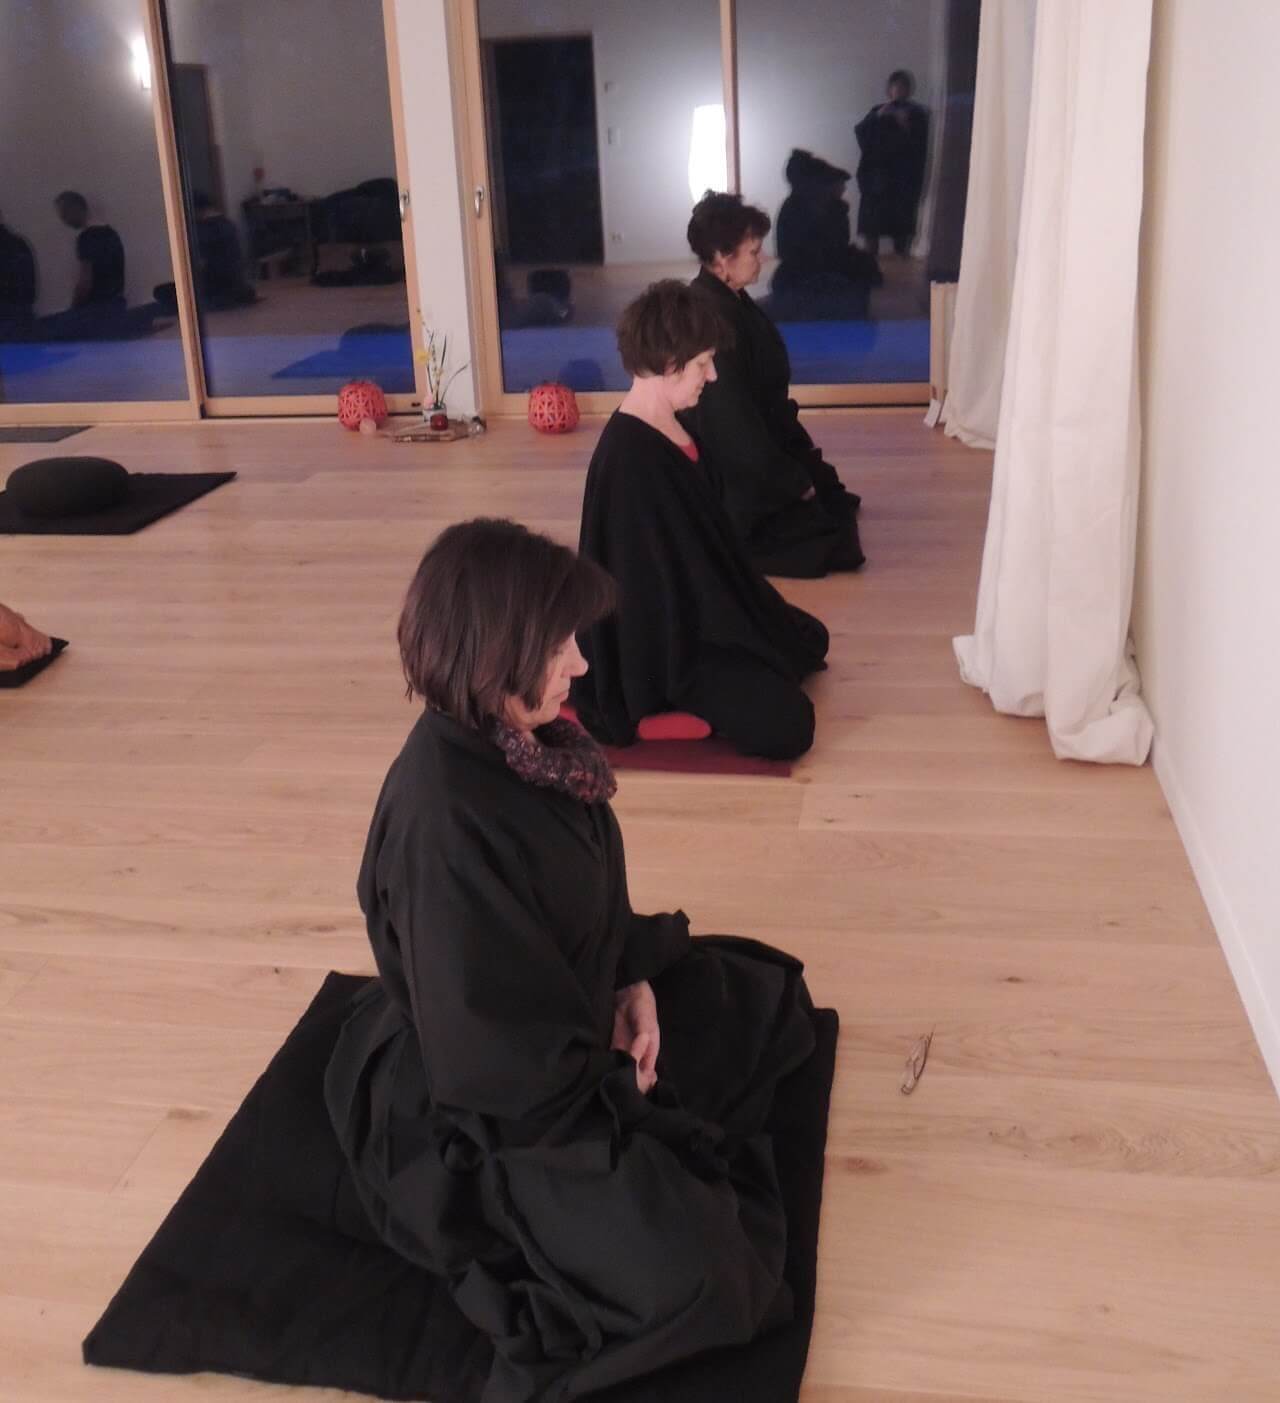 Trois personnes en position de méditation assise